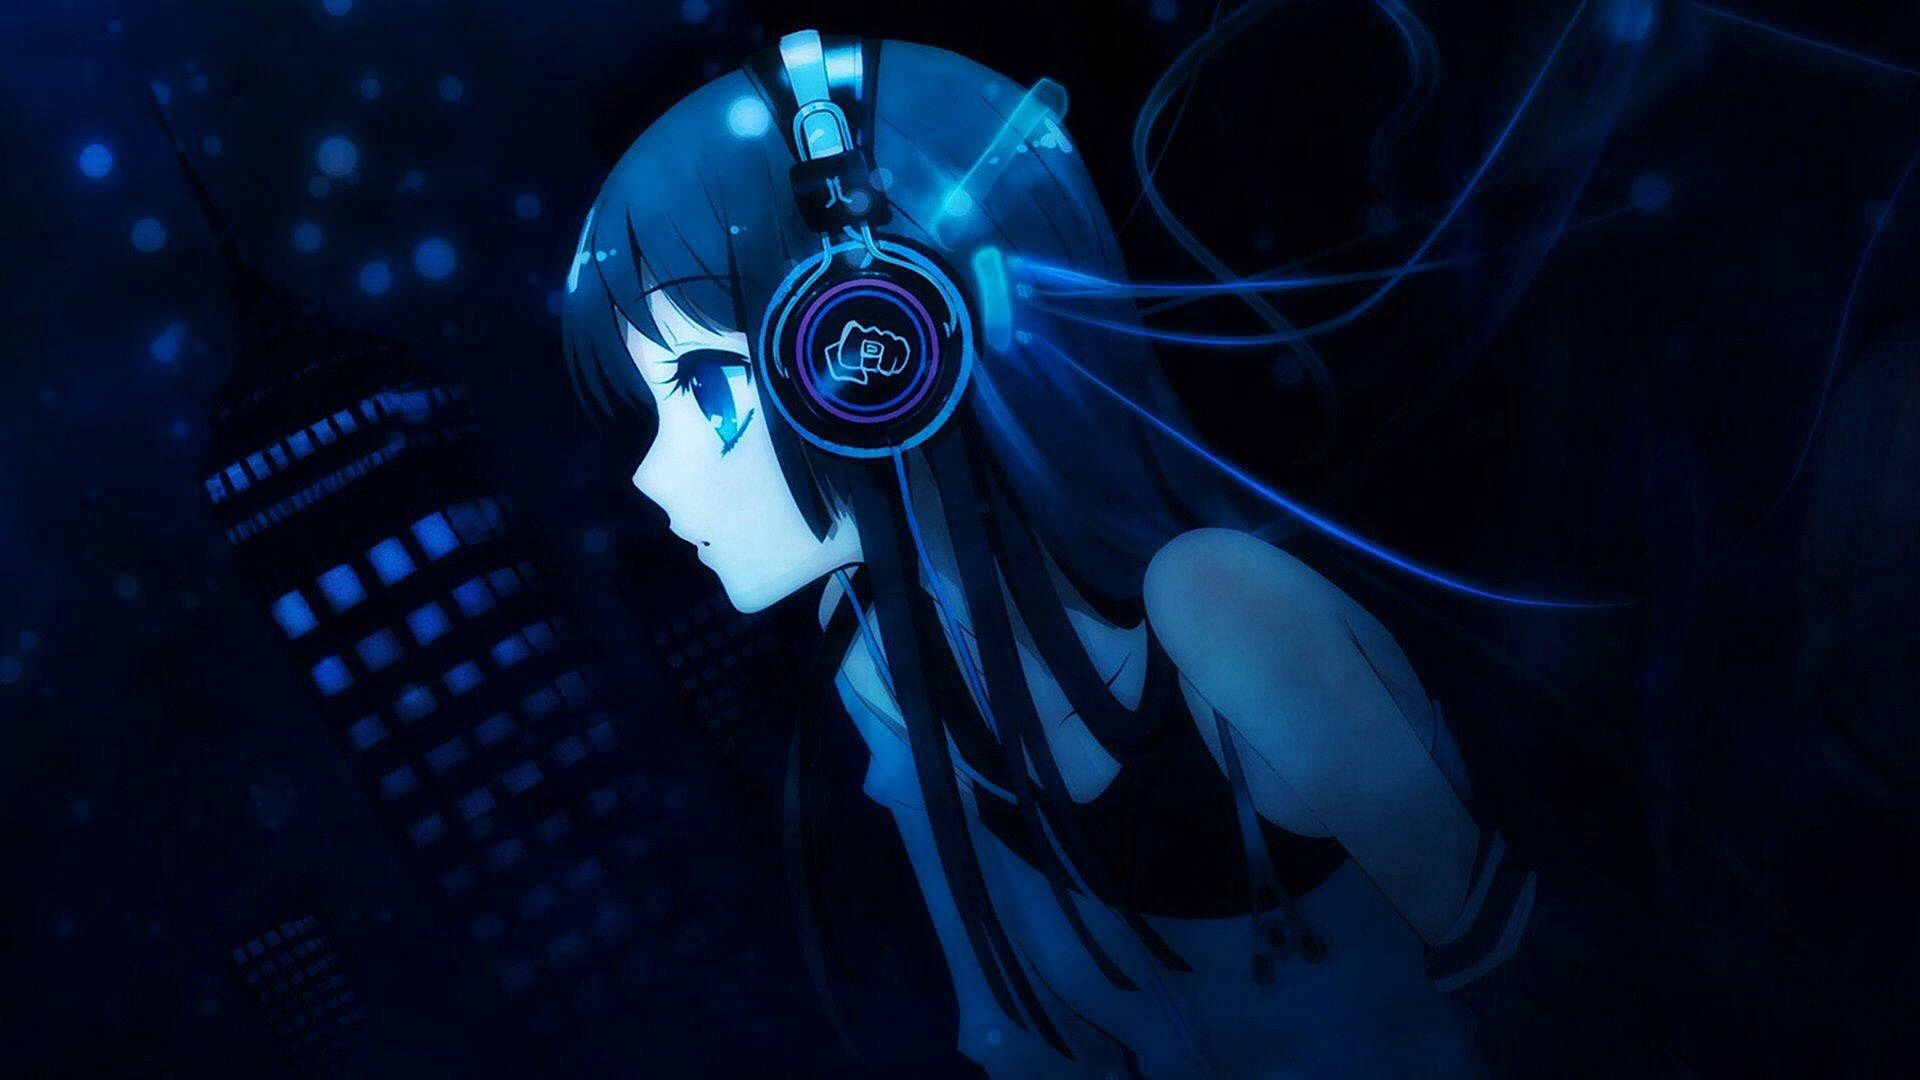 Anime Girl Listening To Music Art 1080p Wallpaper